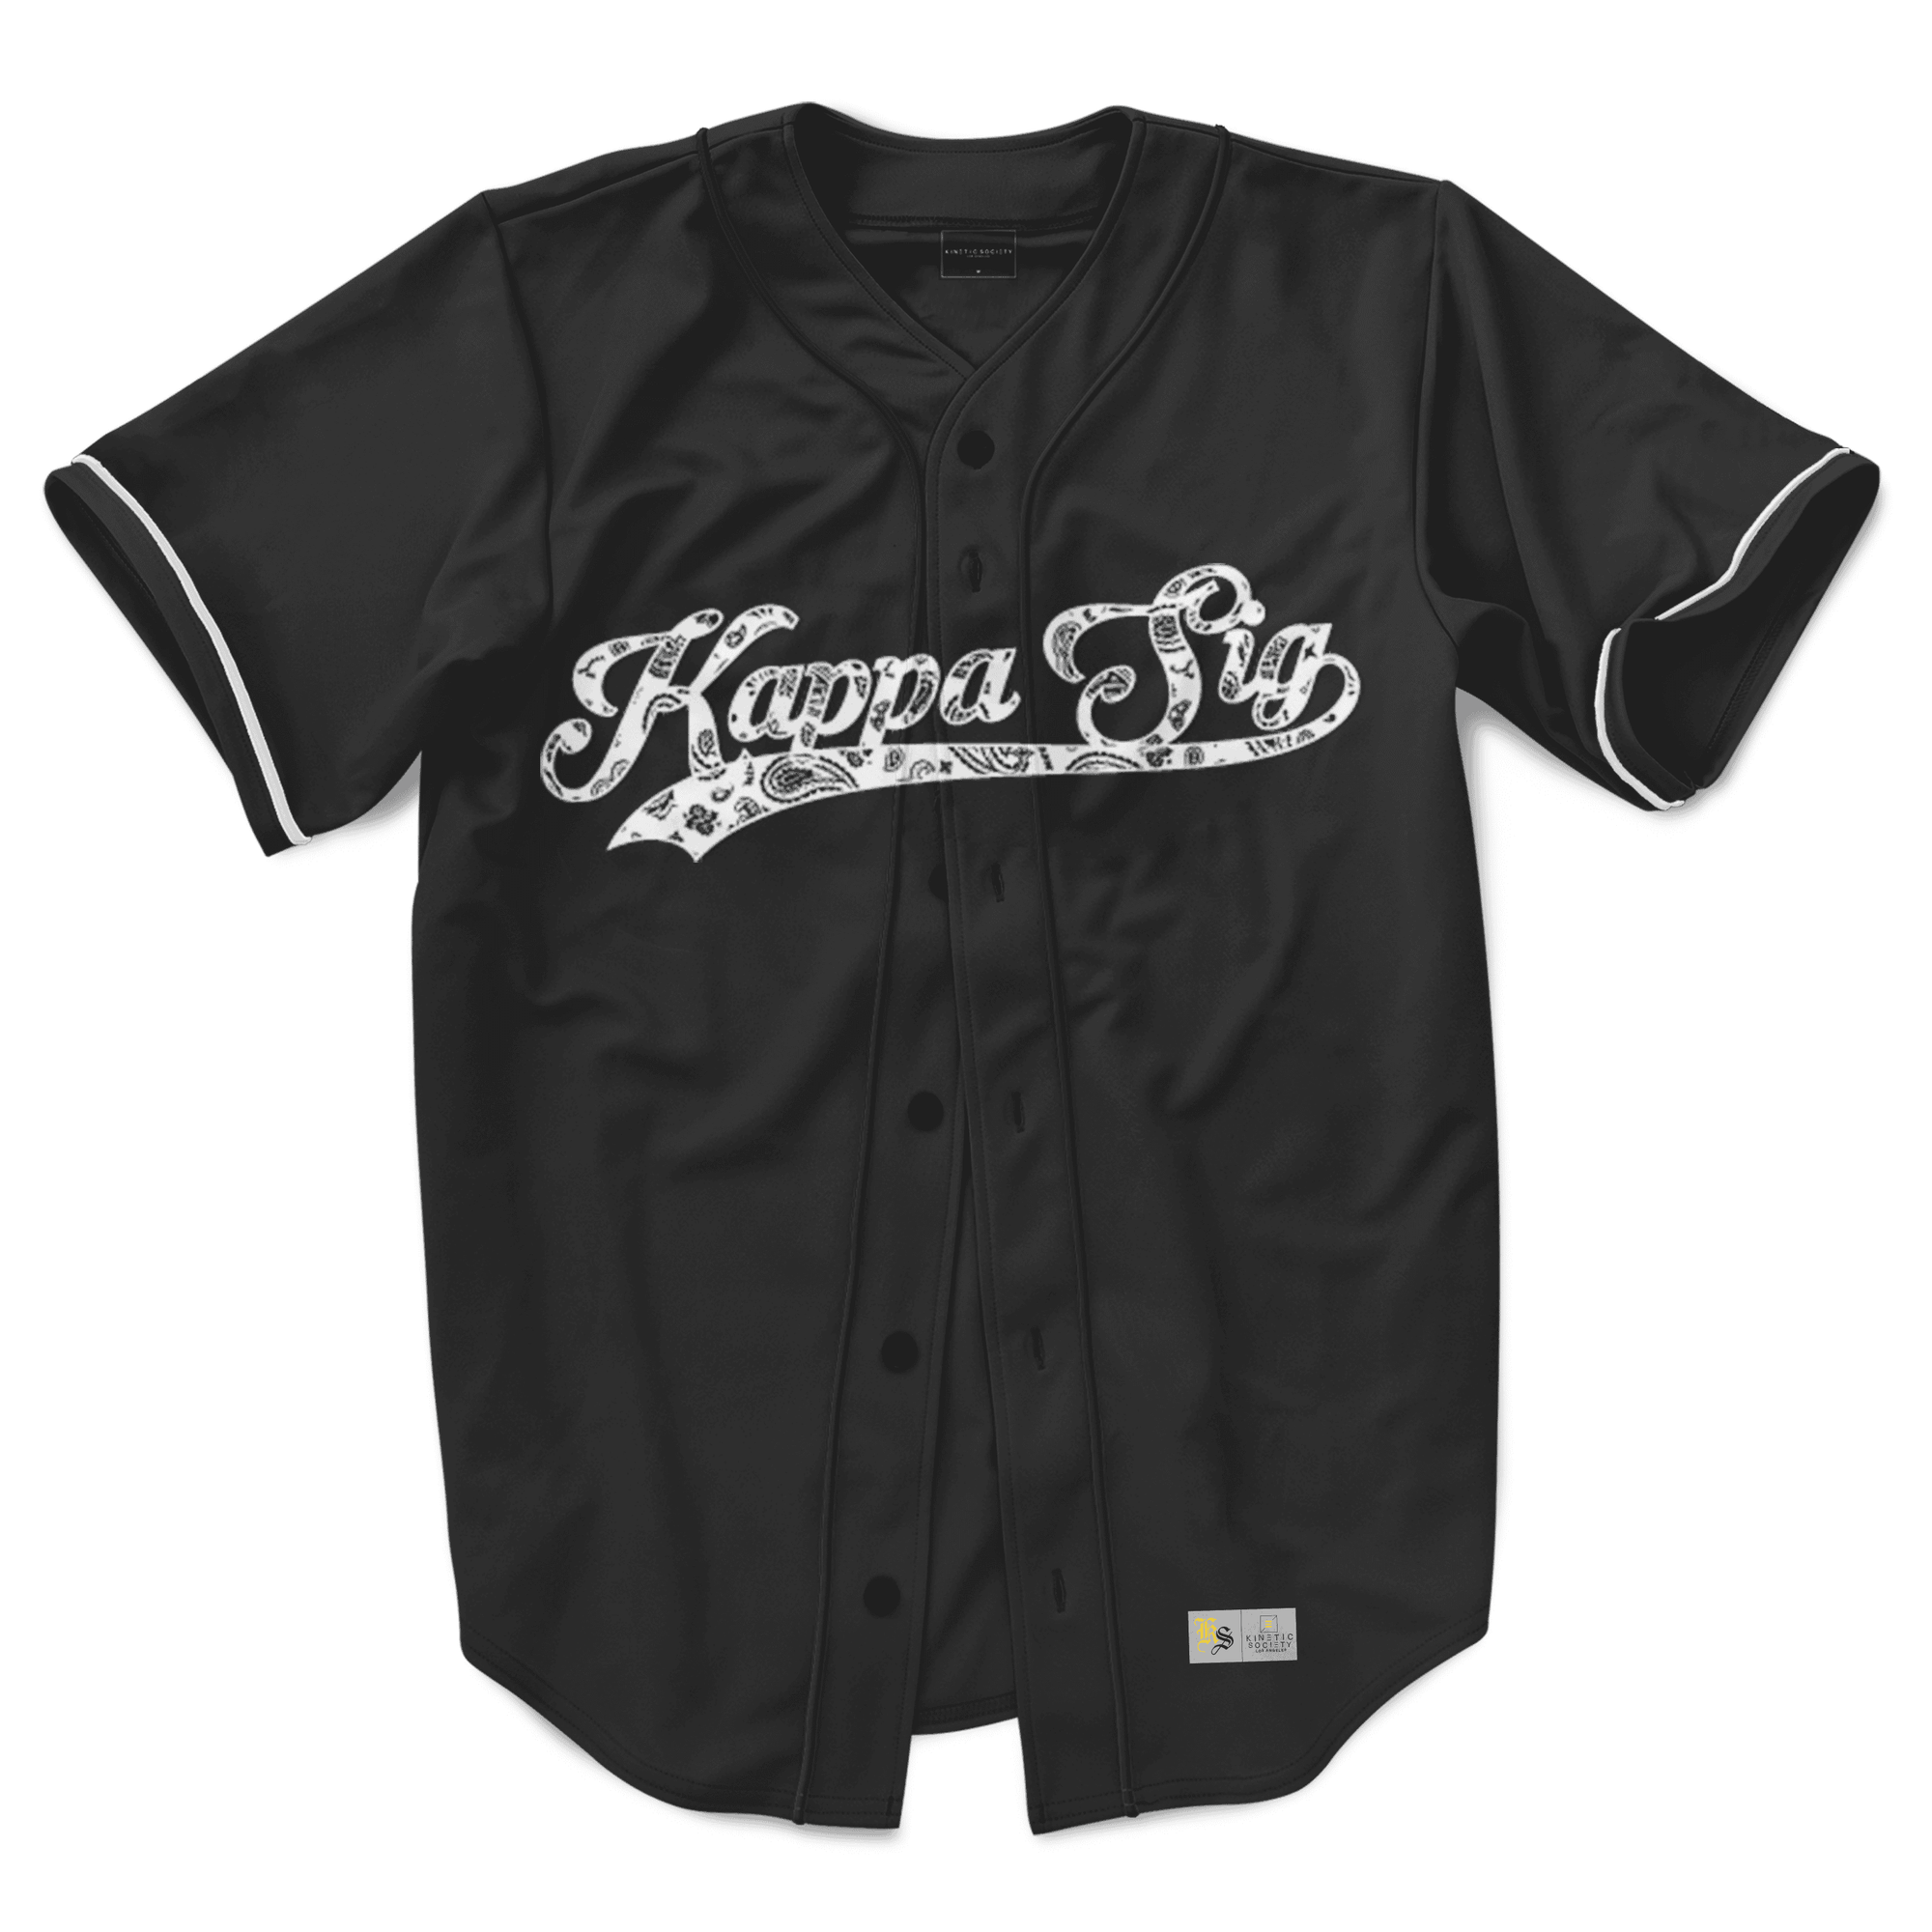 Kappa Sigma - Paisley Baseball Jersey